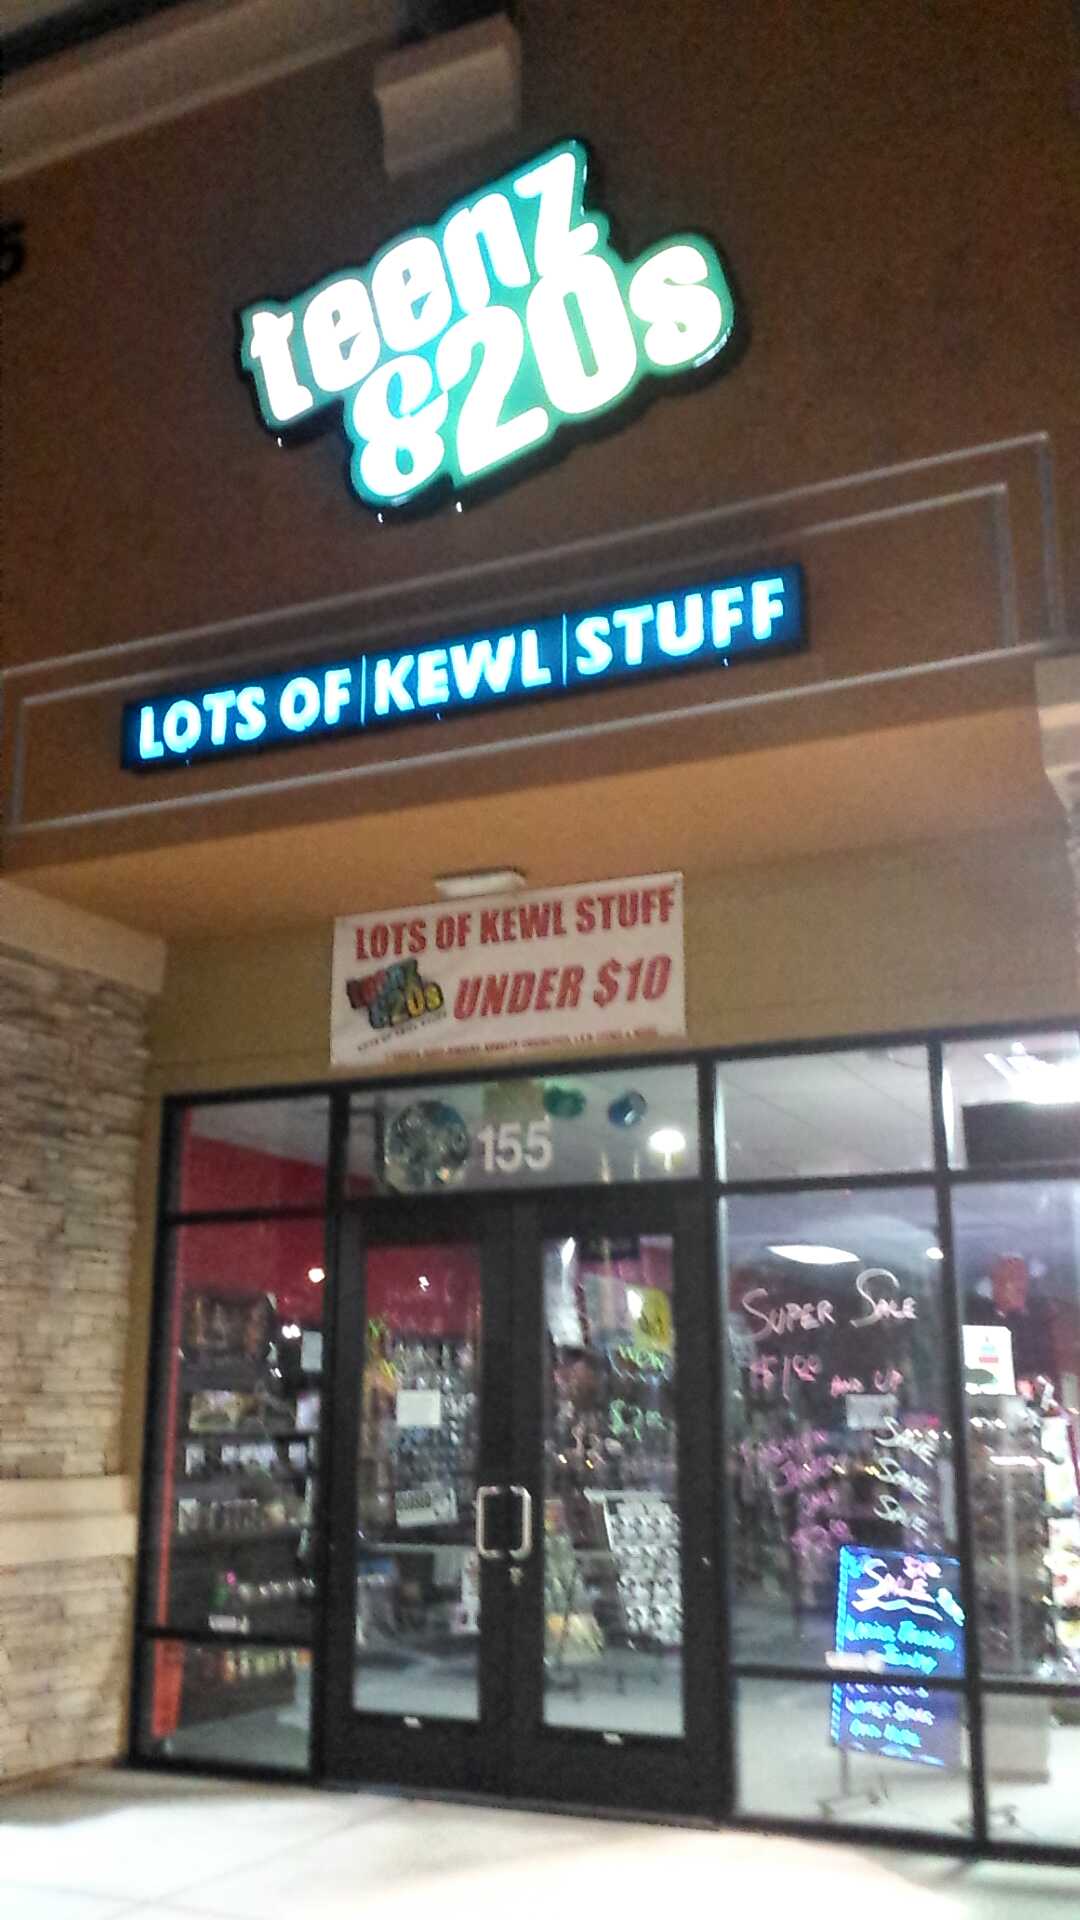 signage - Lots OfKewlStuff Lots Of Kewi Stuff D Under $10 78155